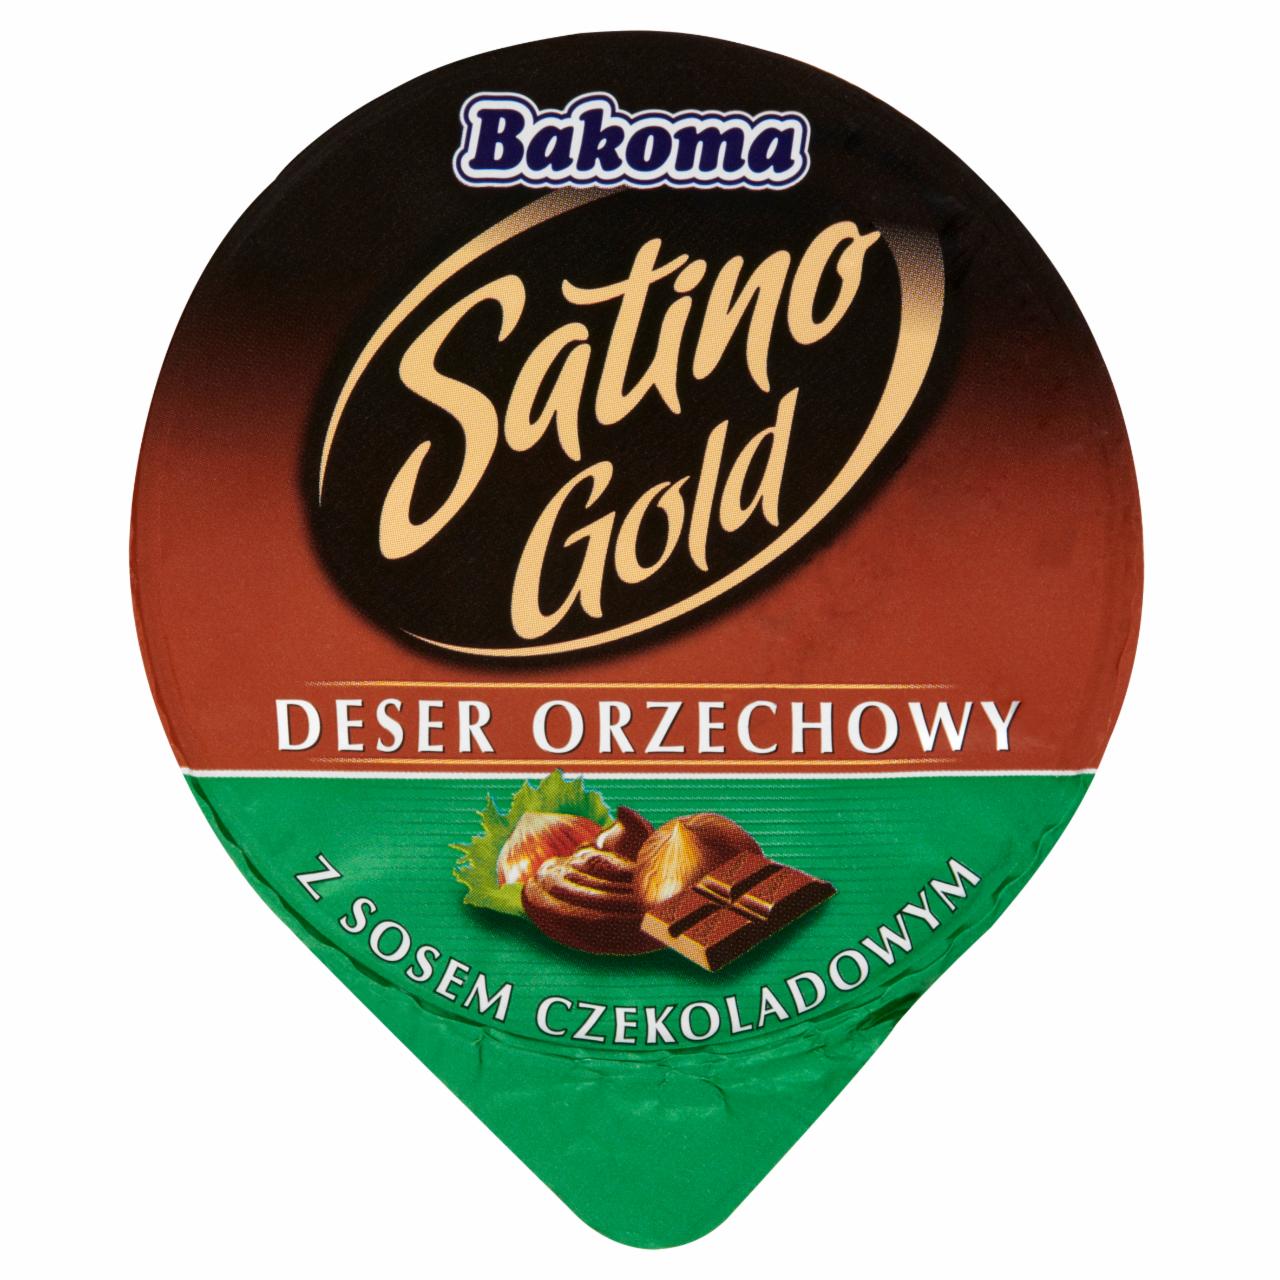 Zdjęcia - Bakoma Satino Gold Deser orzechowy z sosem czekoladowym 140 g